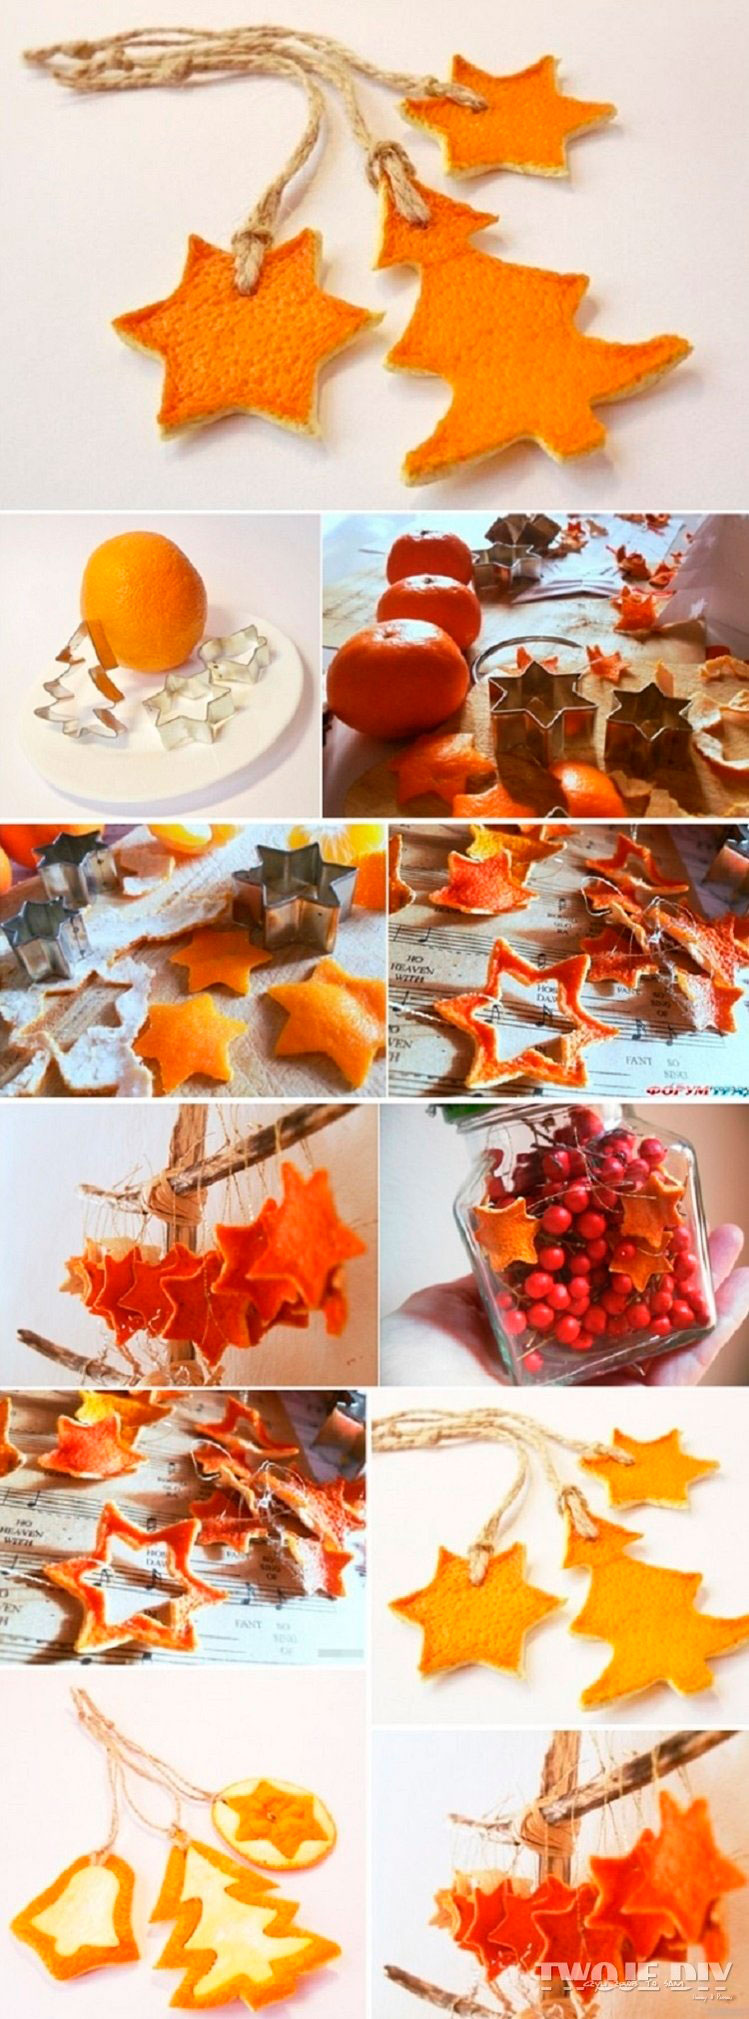 reciclar pieles de naranja para hacer adornos colgantes